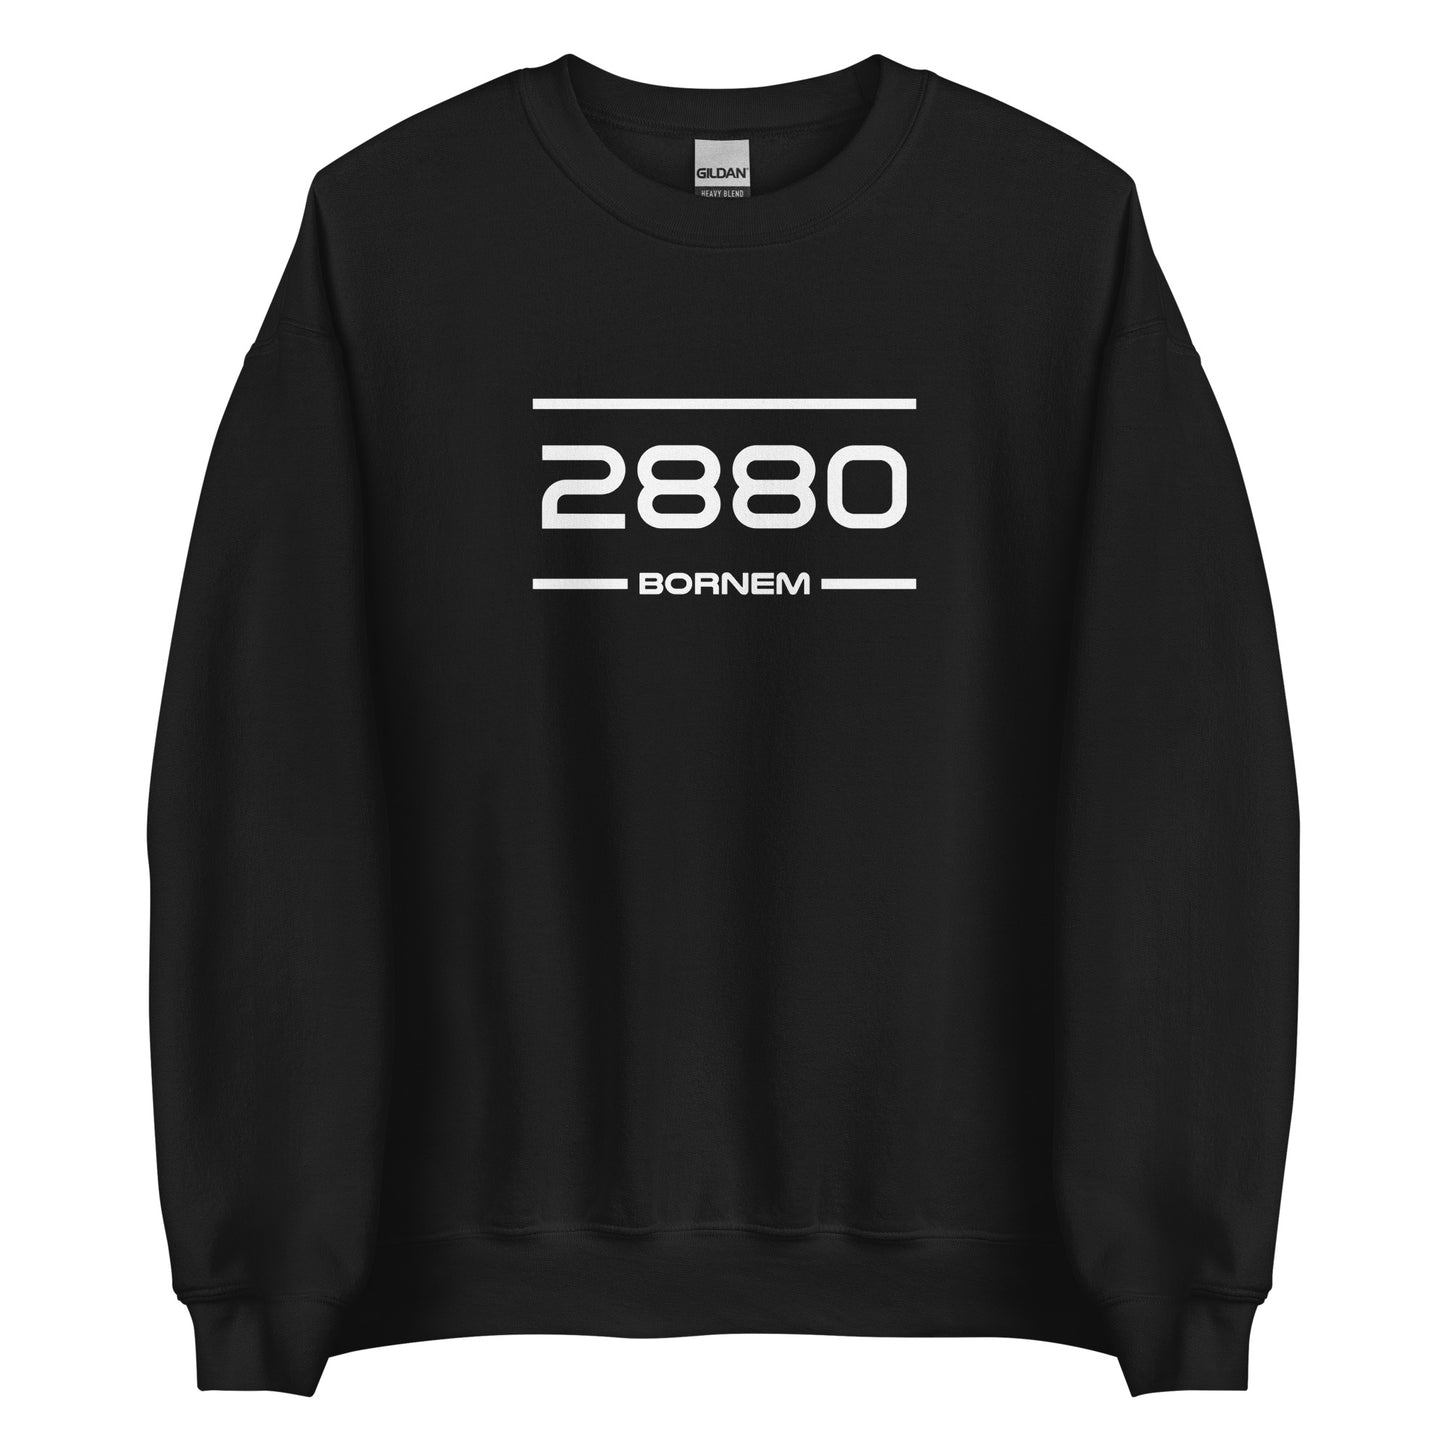 Sweater - 2880 - Bornem (M/V)